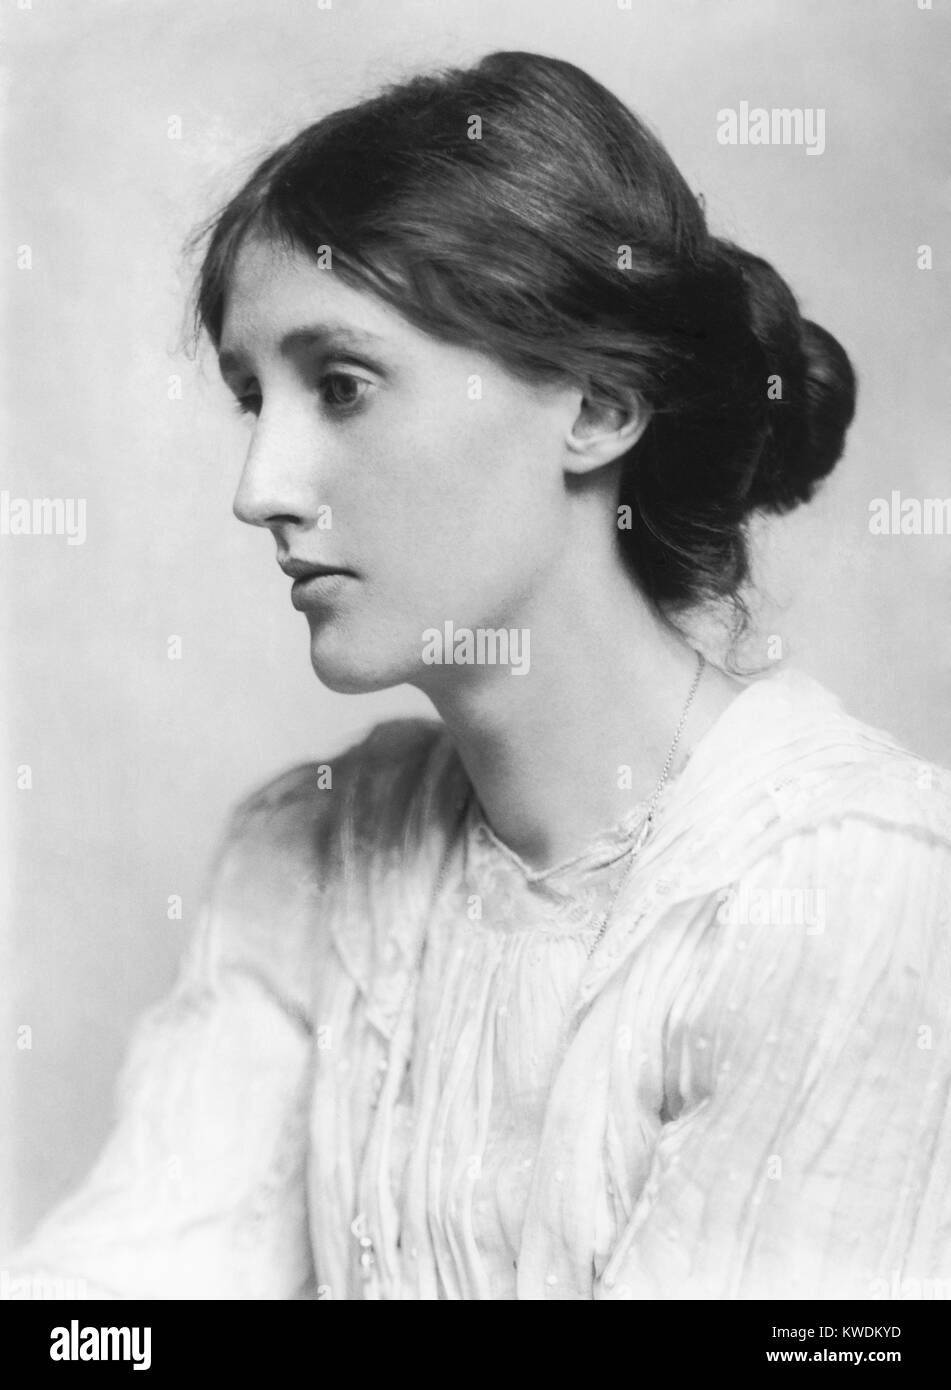 Virginia Woolf, britische Autorin und Feministin. Adeline Virginia Woolf, englischer Schriftsteller Stockfoto